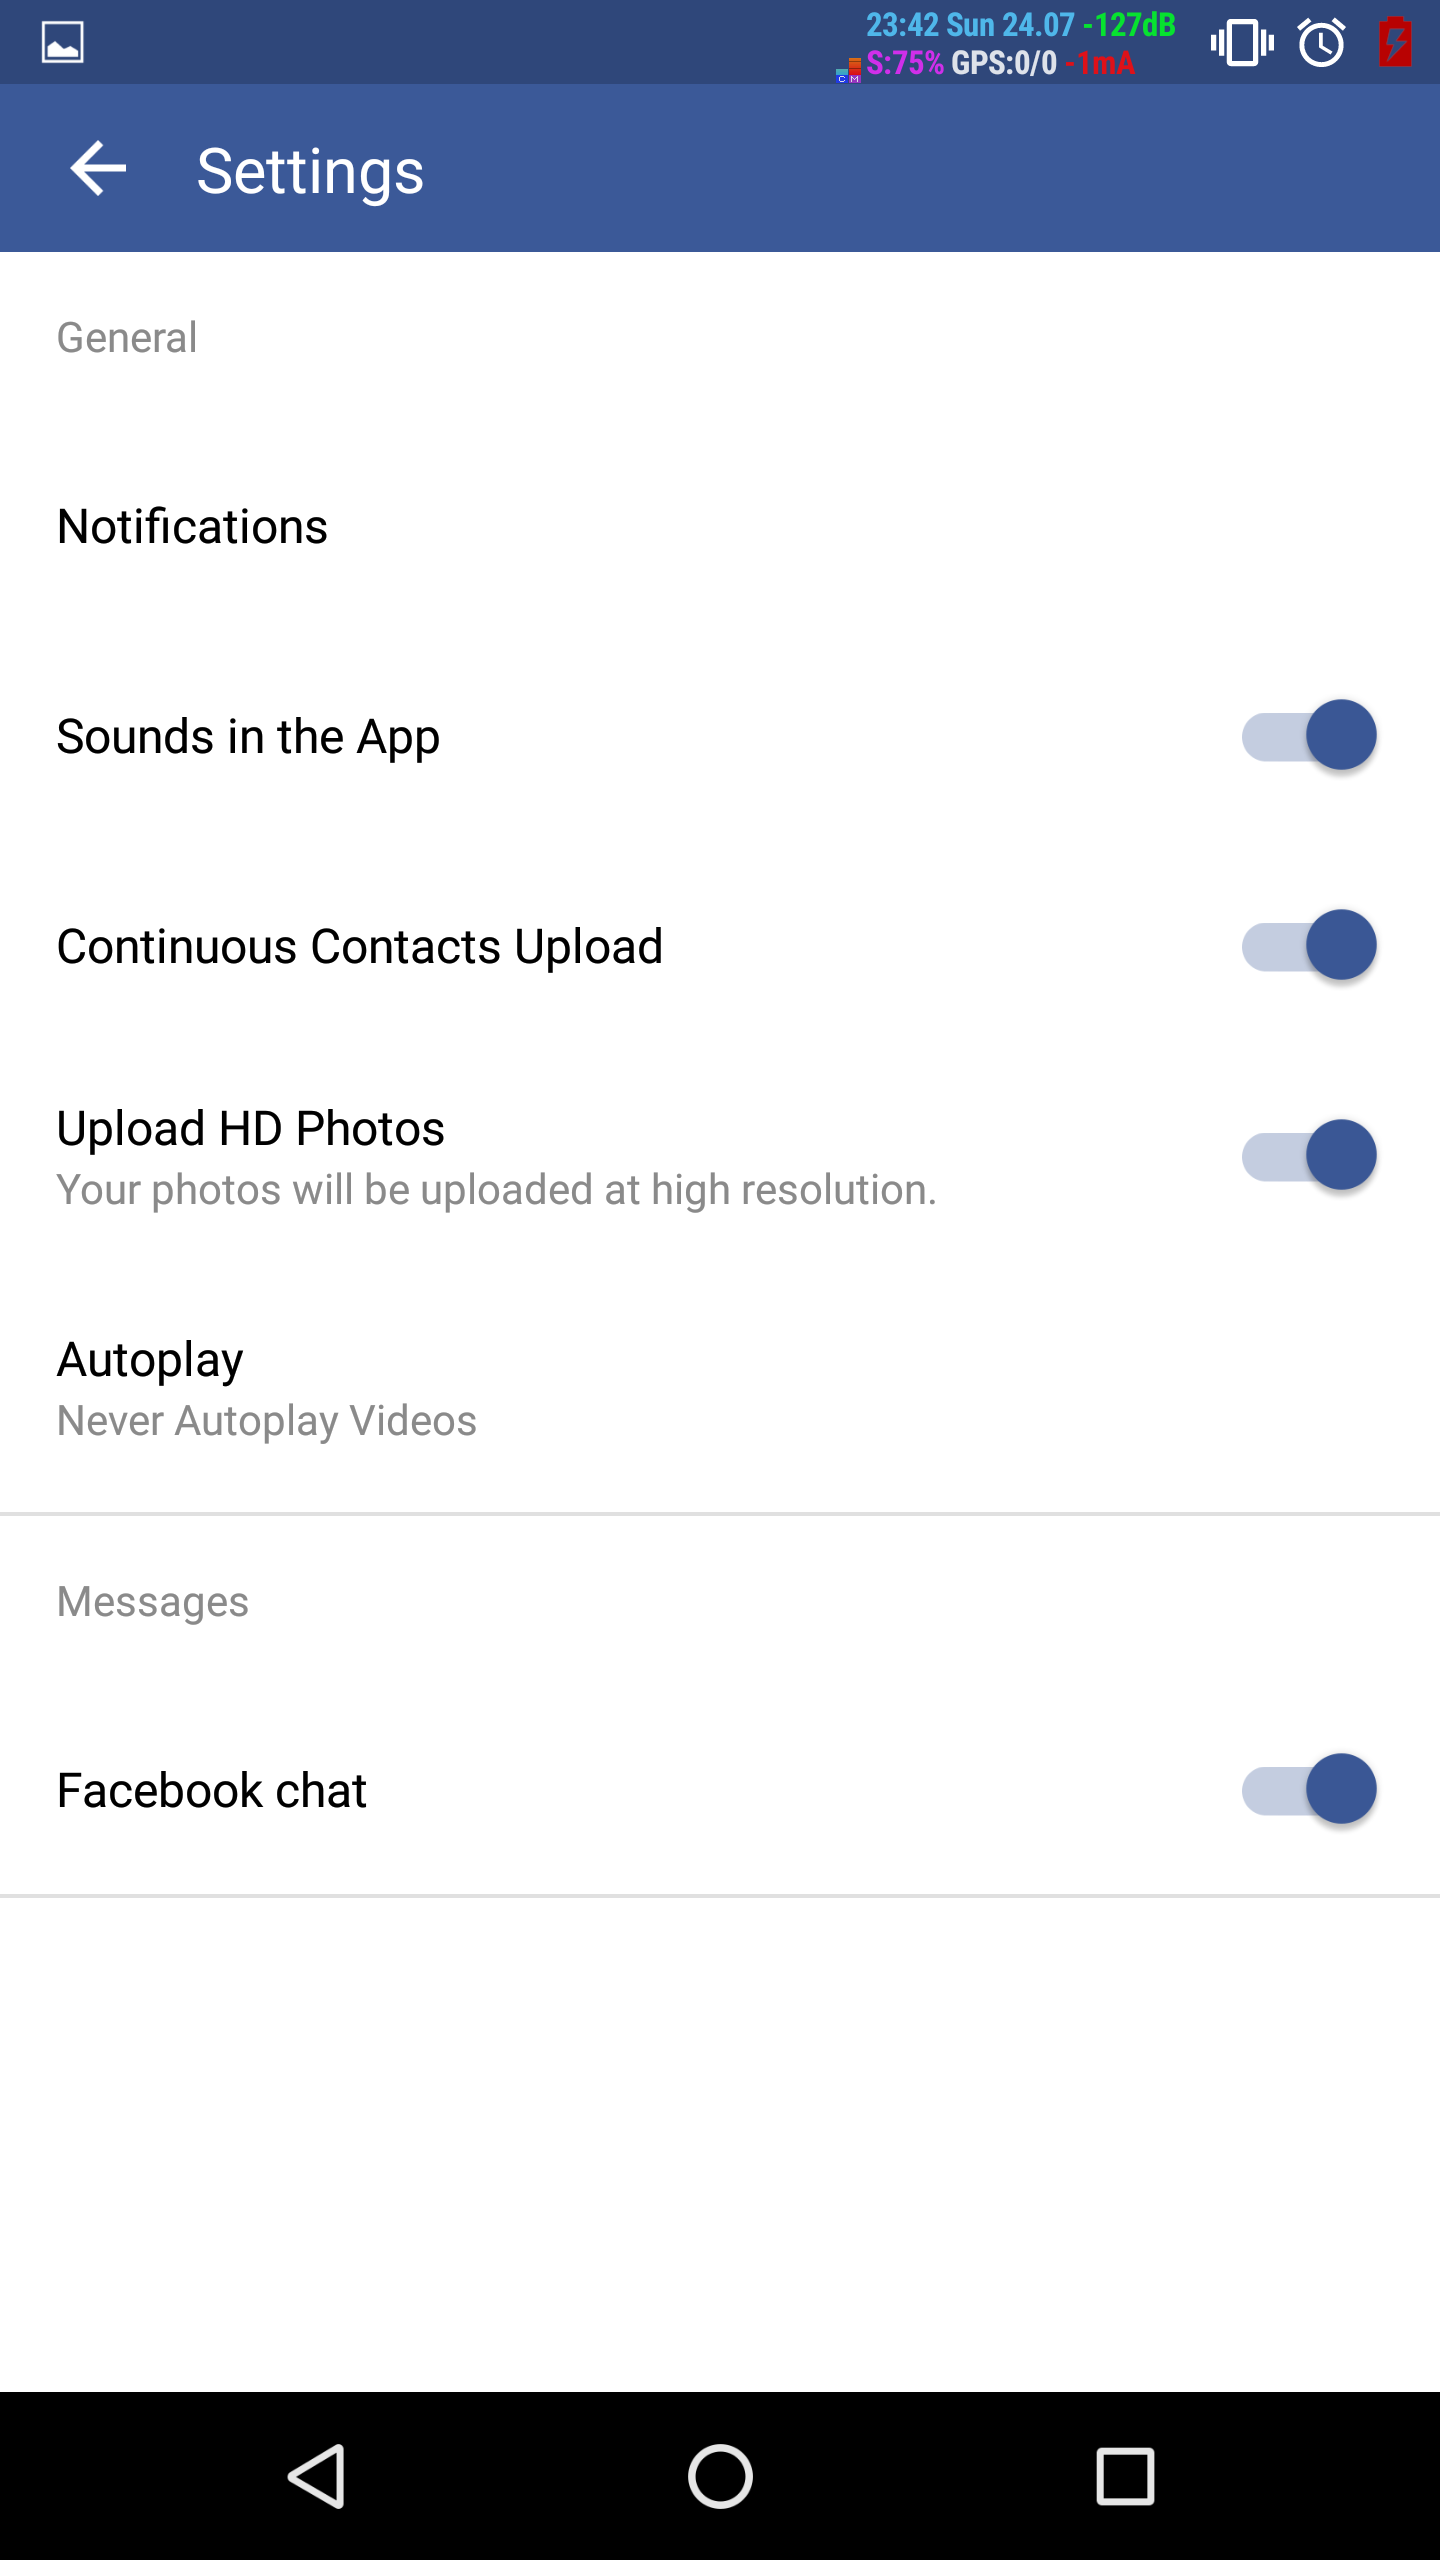 FB-4-app-settings.png